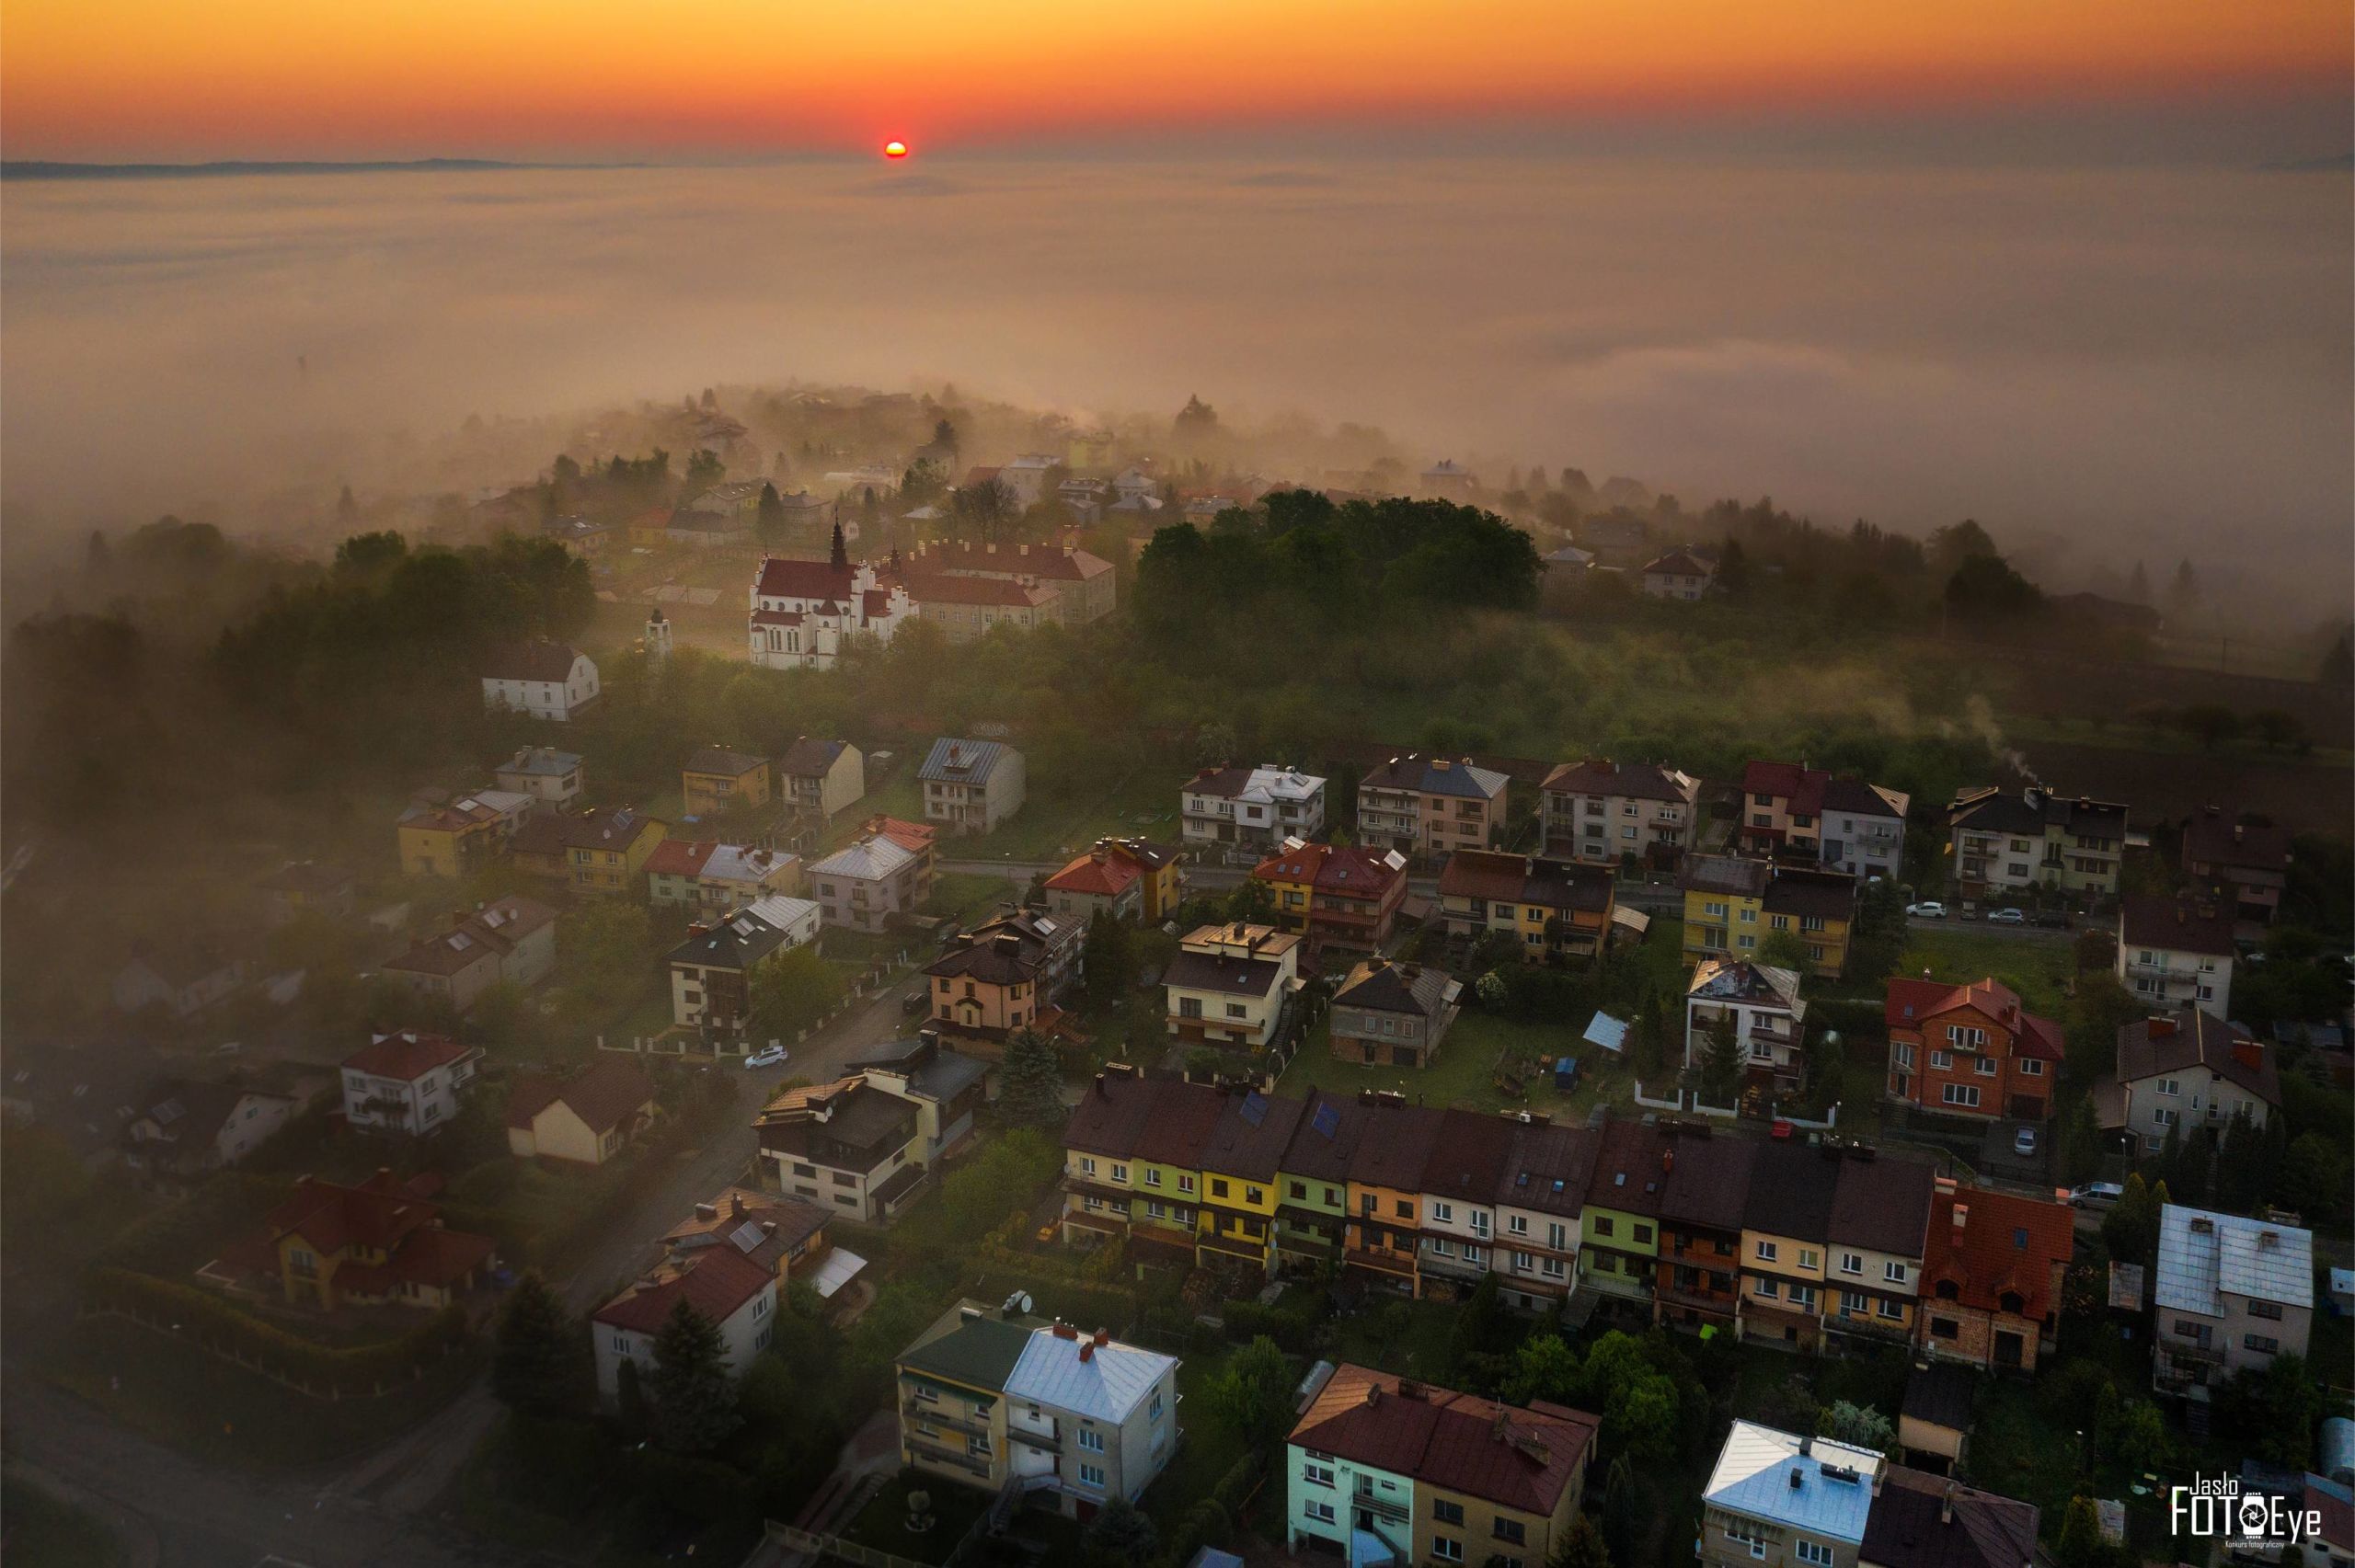 Zdjęcie przedstawiające jedno z jasielskich osiedli otulone mgłą, autorstwa Jana Kowalskiego.